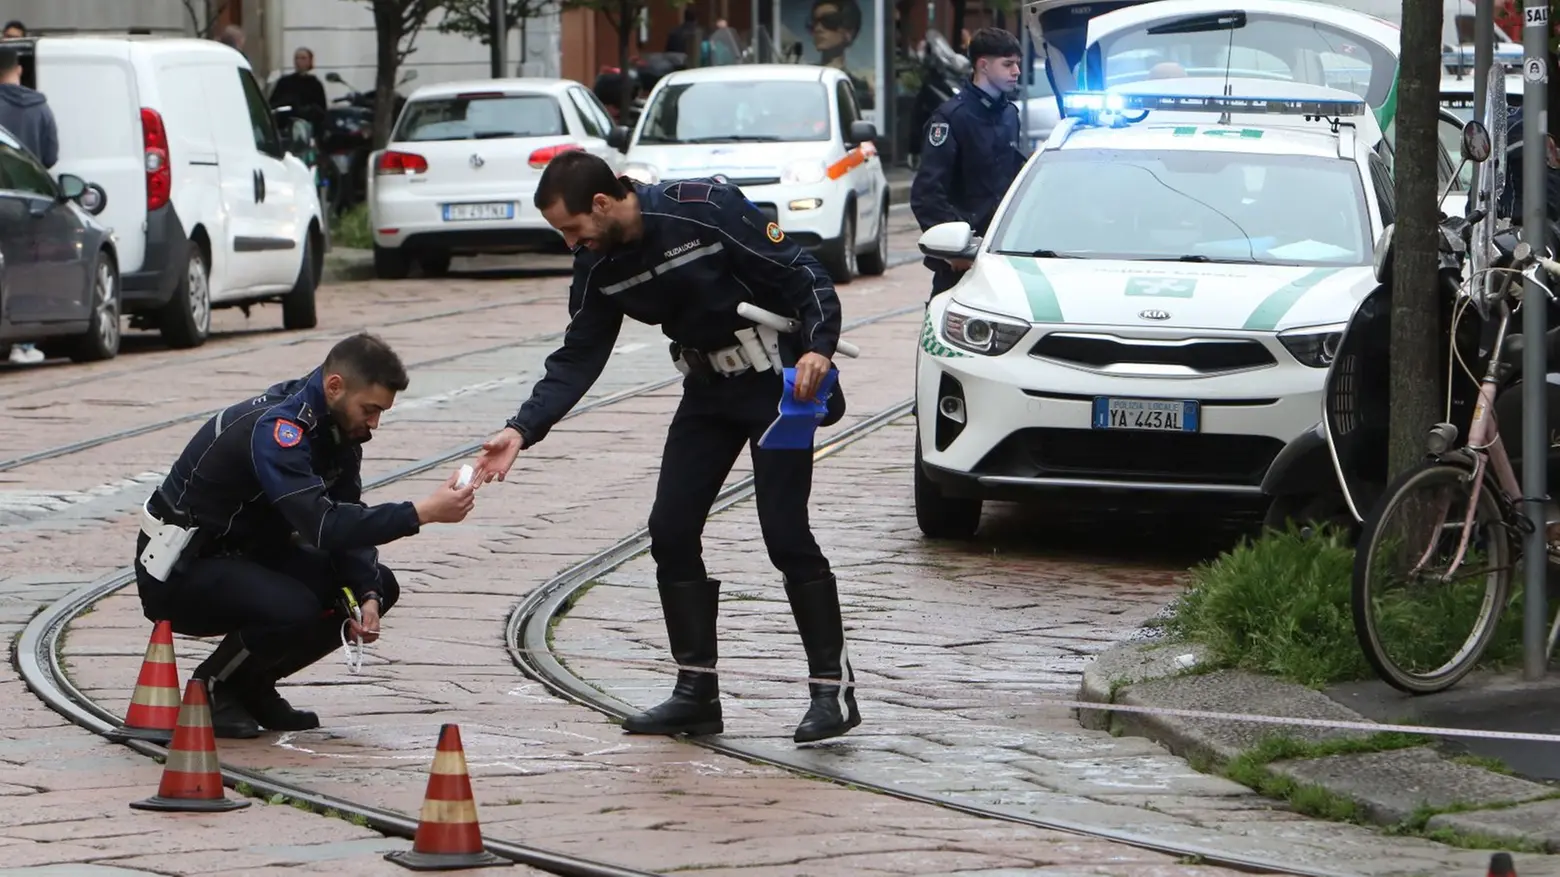 Polizia locale sul luogo dell'incidente in via San Vittore a Milano